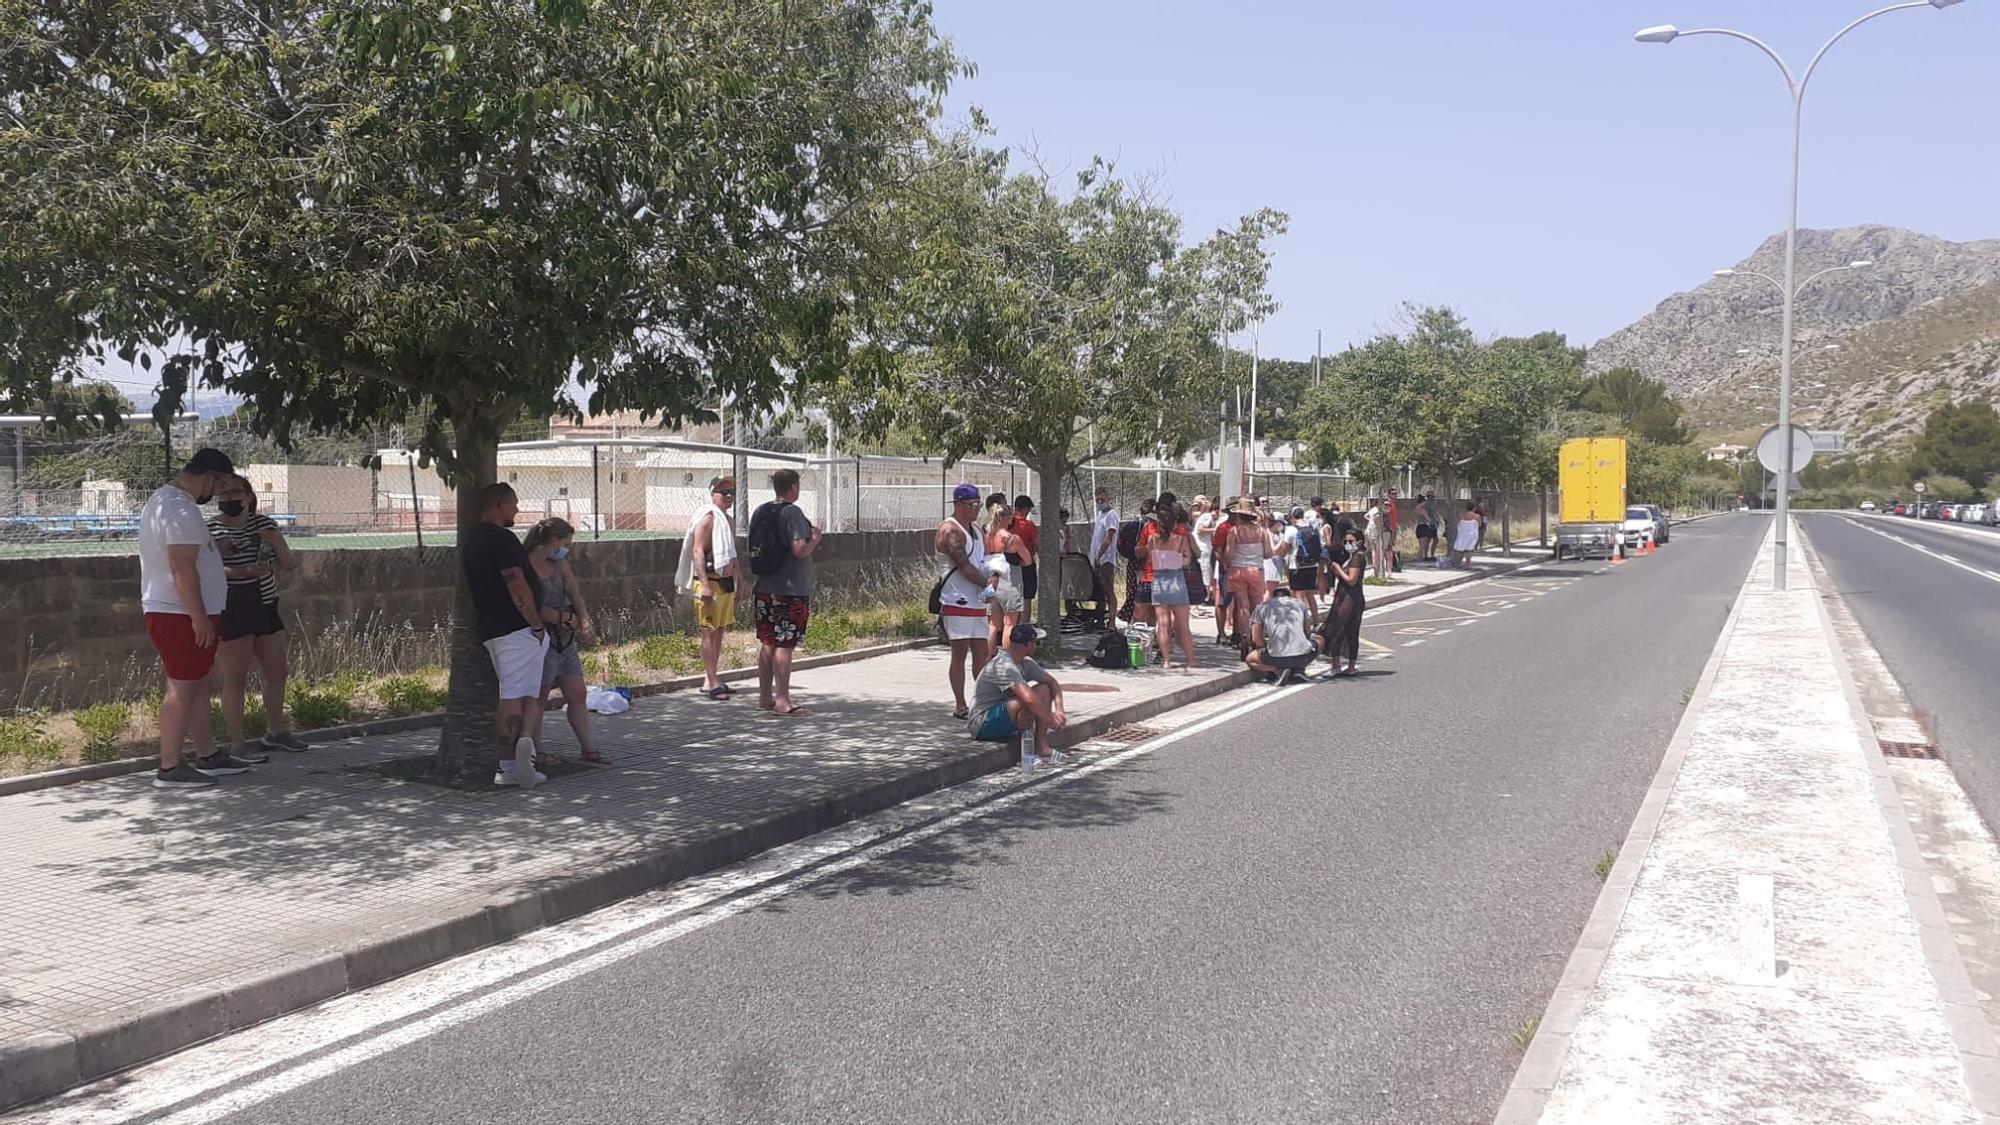 Empiezan las restricciones para llegar a Formentor: permiten el acceso en coche privado a cambio de una consumición en la playa